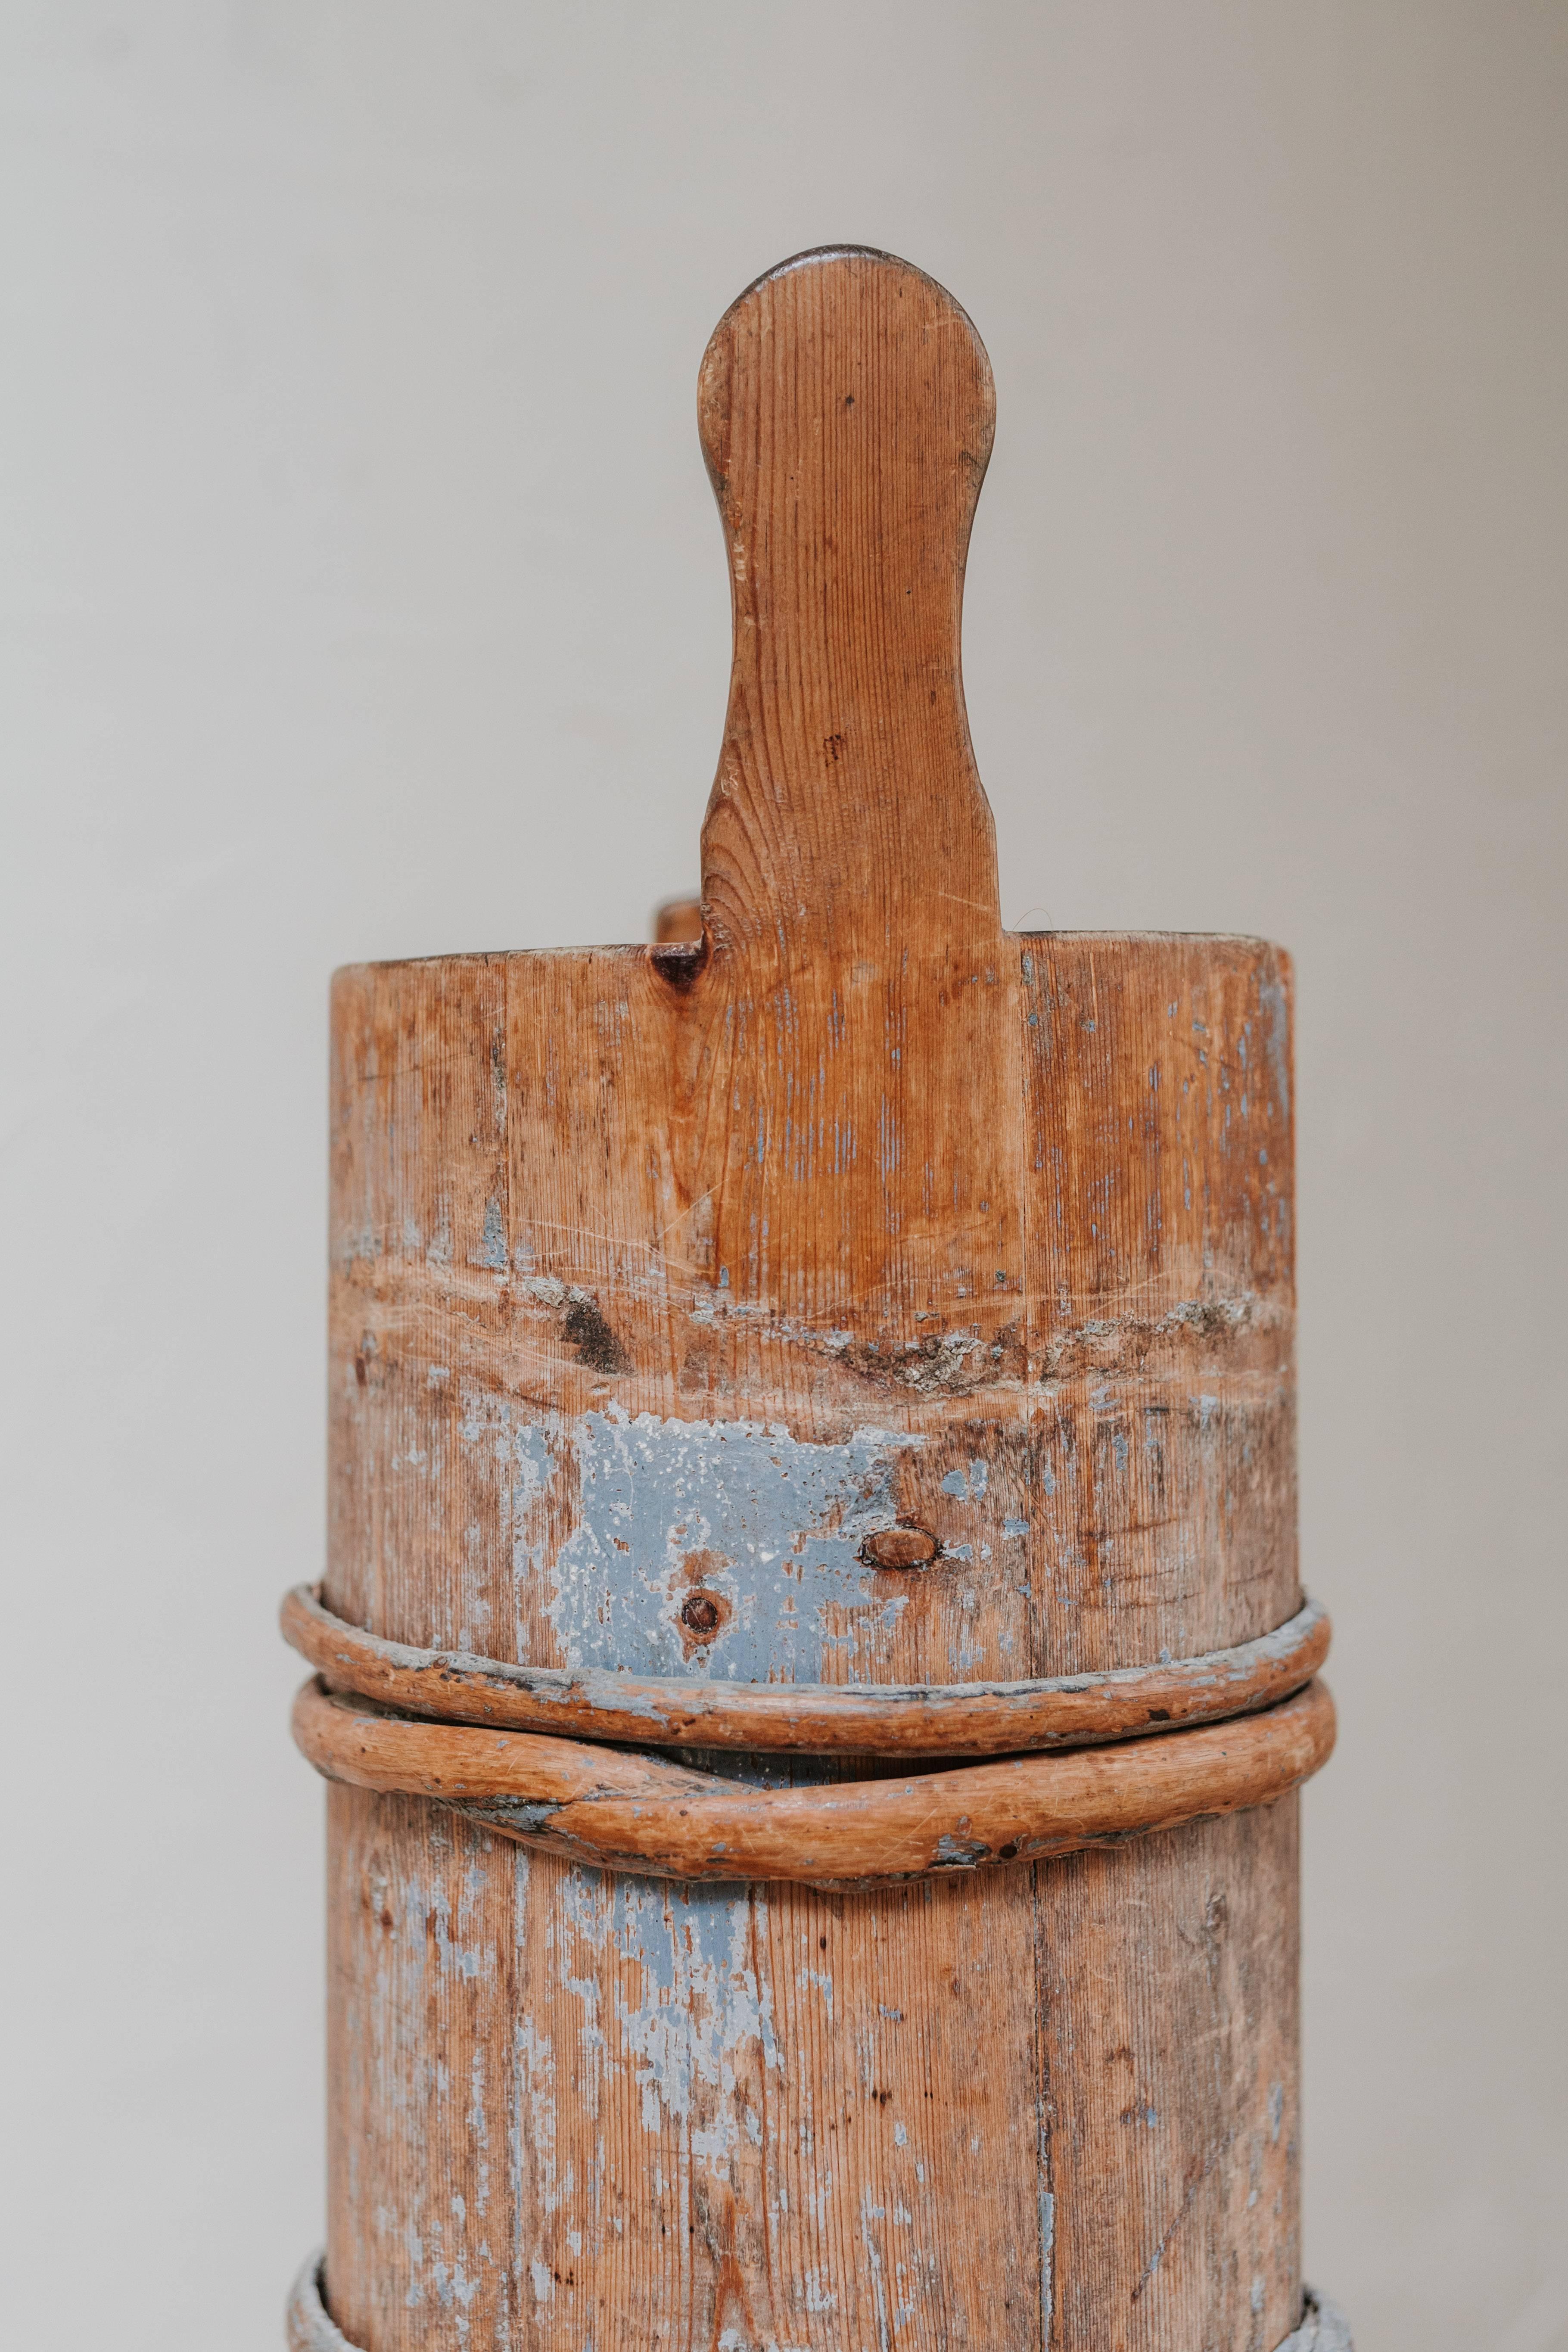 il s'agit d'un beurrier suédois du 19ème siècle, avec des restes de vieille peinture bleue, ici utilisé comme canne/peigne.